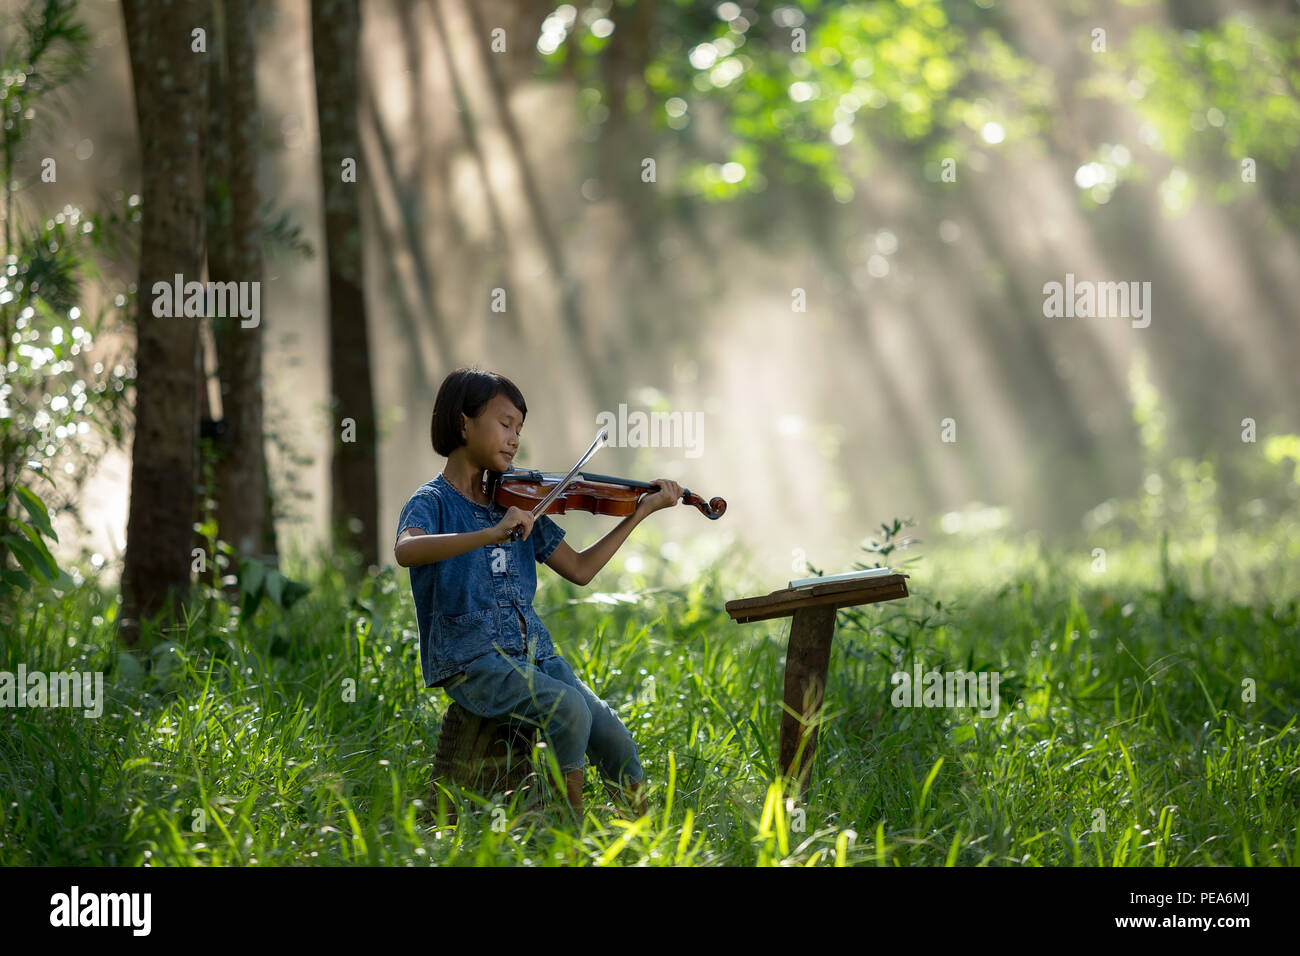 La jeune fille jouit de jouer du violon ou de jouer sa musique à l'état sauvage. Banque D'Images